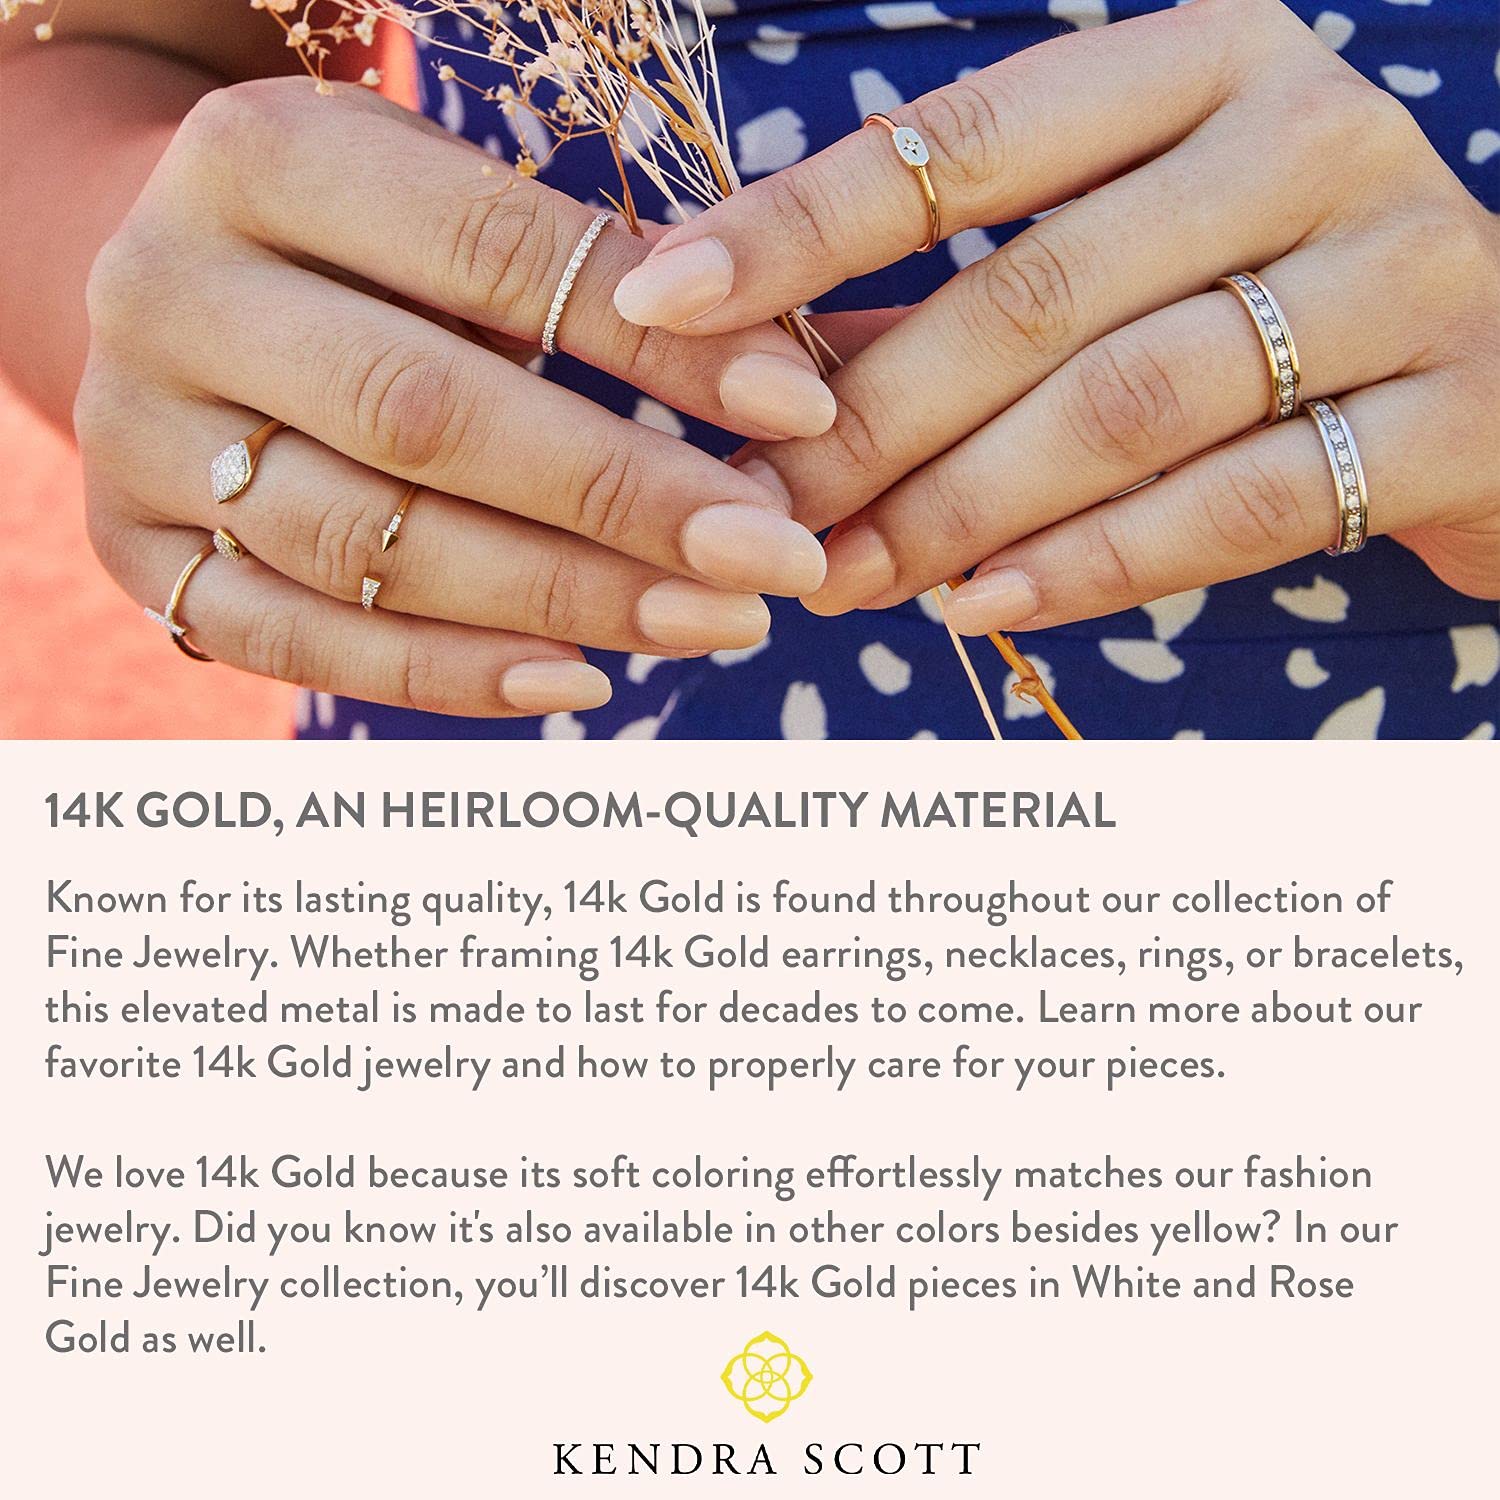 Kendra Scott White Diamond Heart Pendant Necklace in 14k Gold, Fine Jewelry for Women